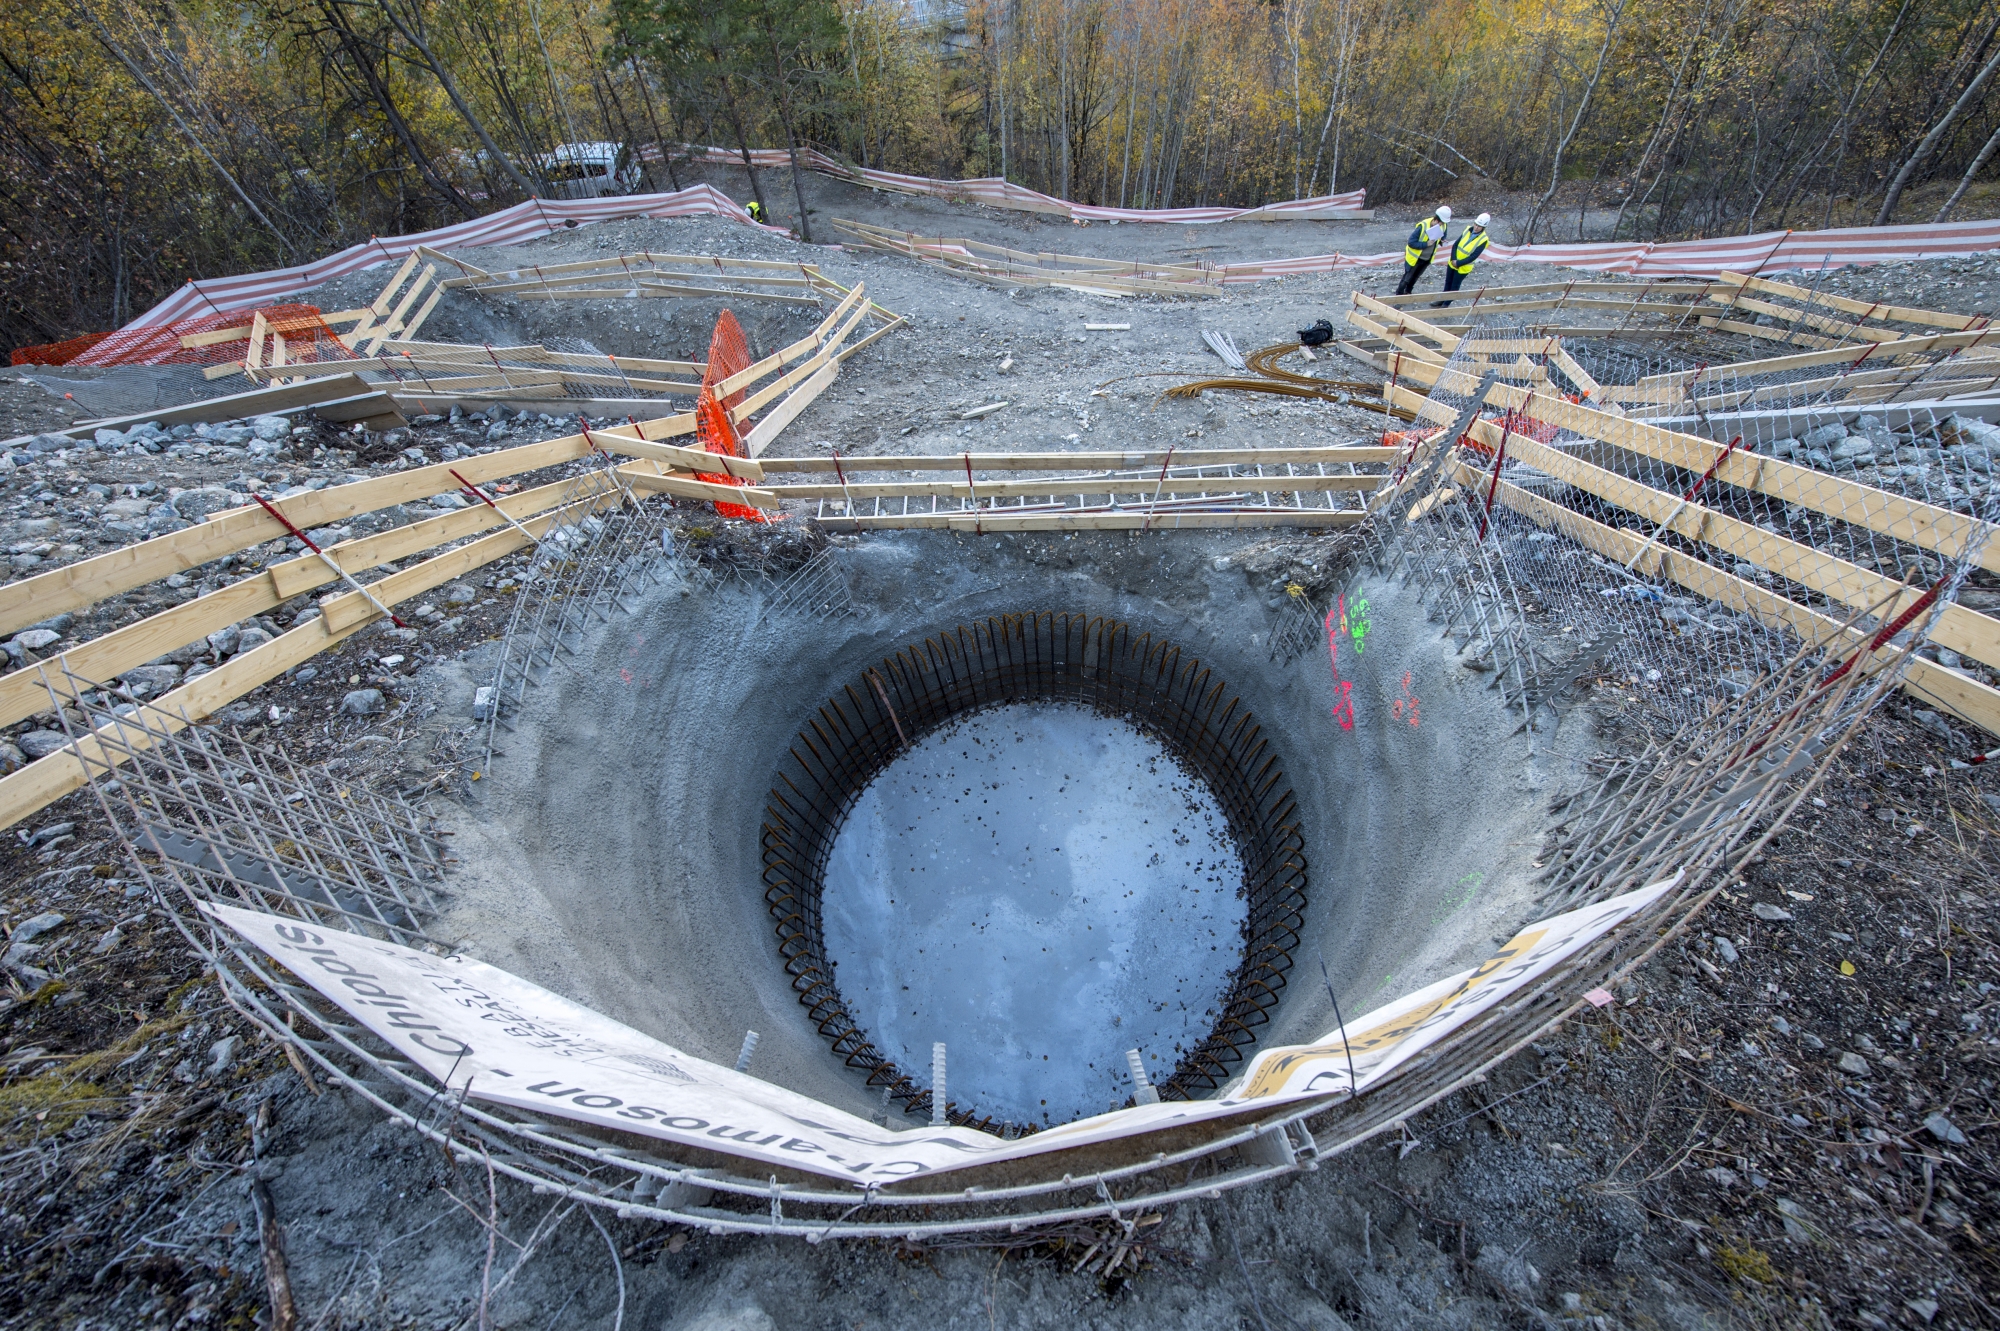 Pour accueillir les 77 pylônes fournis par une société française, Swissgrid creuse des puits jusqu'à 7 mètres de profondeur, avant d'en bétonner les fondations.